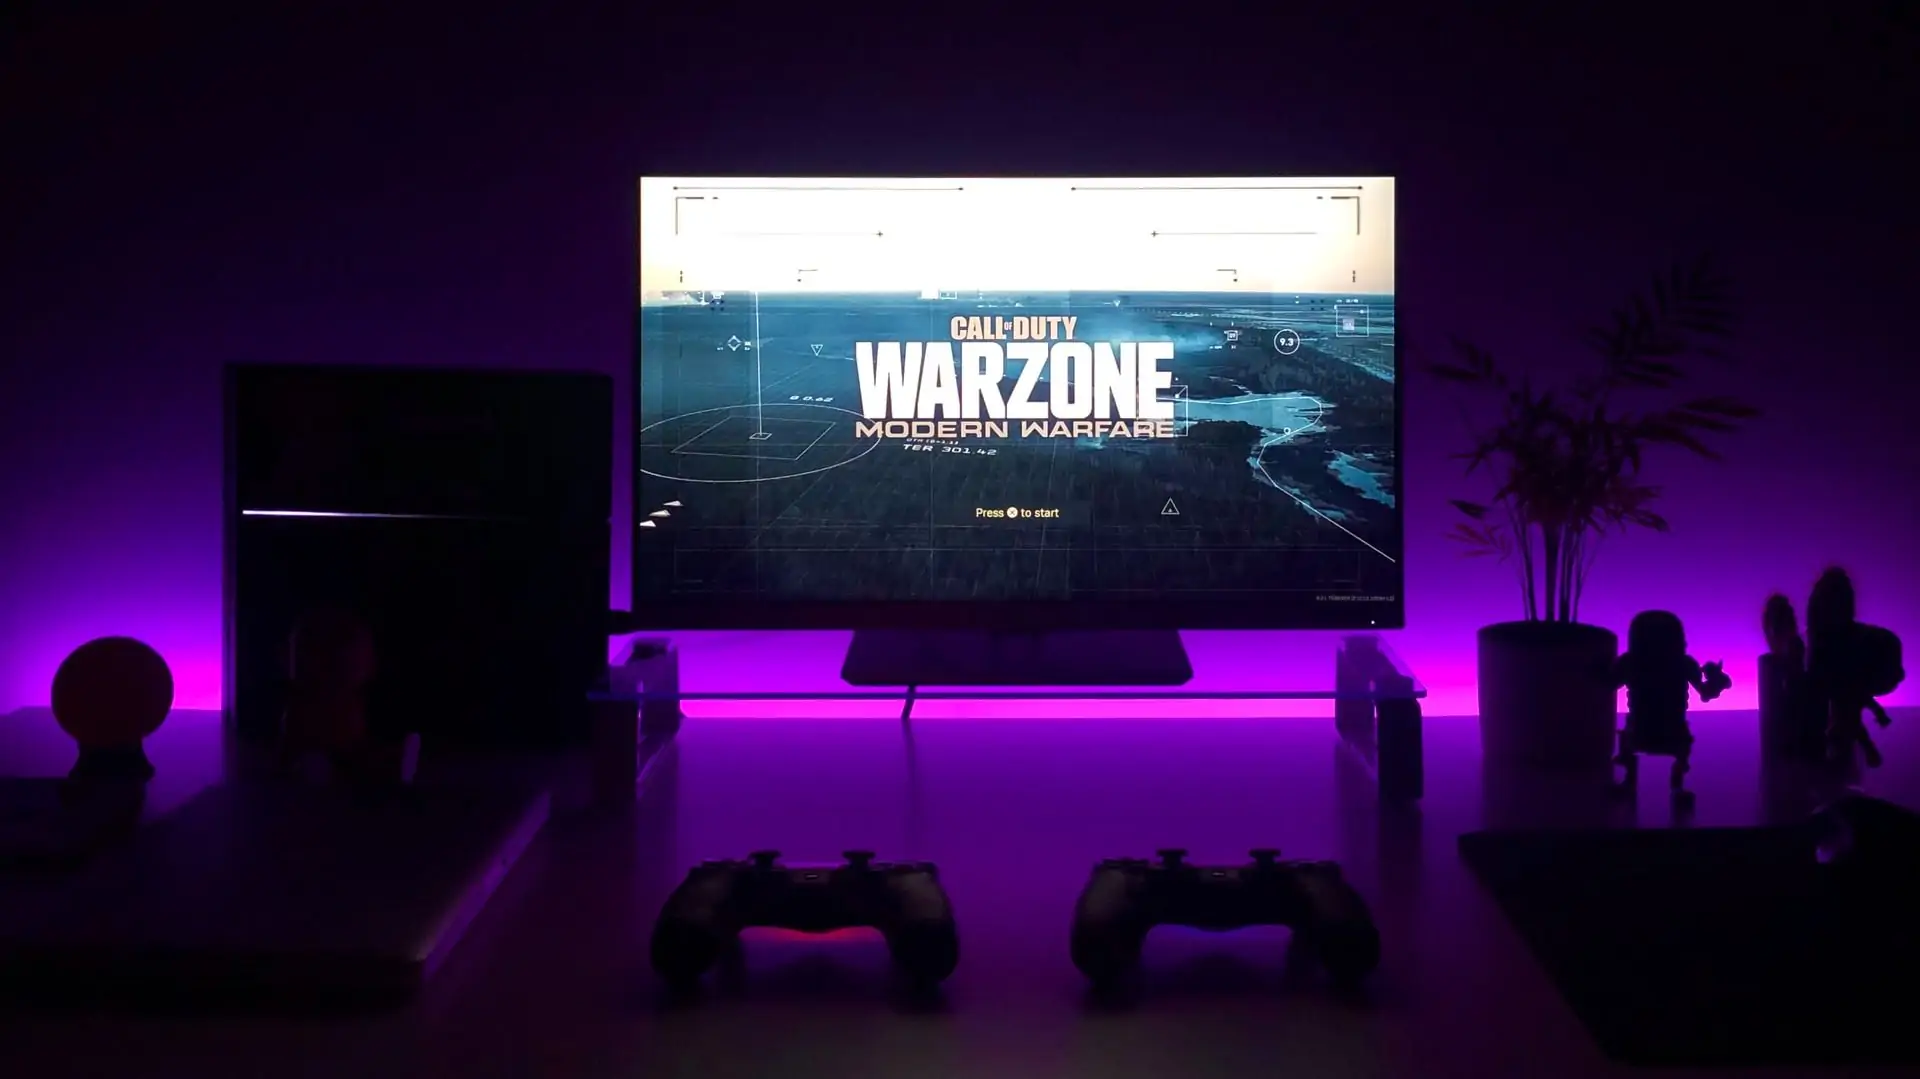 Tv op achtergrond met paarse LED verlichting, met Warzone op het scherm. Vooraanzicht